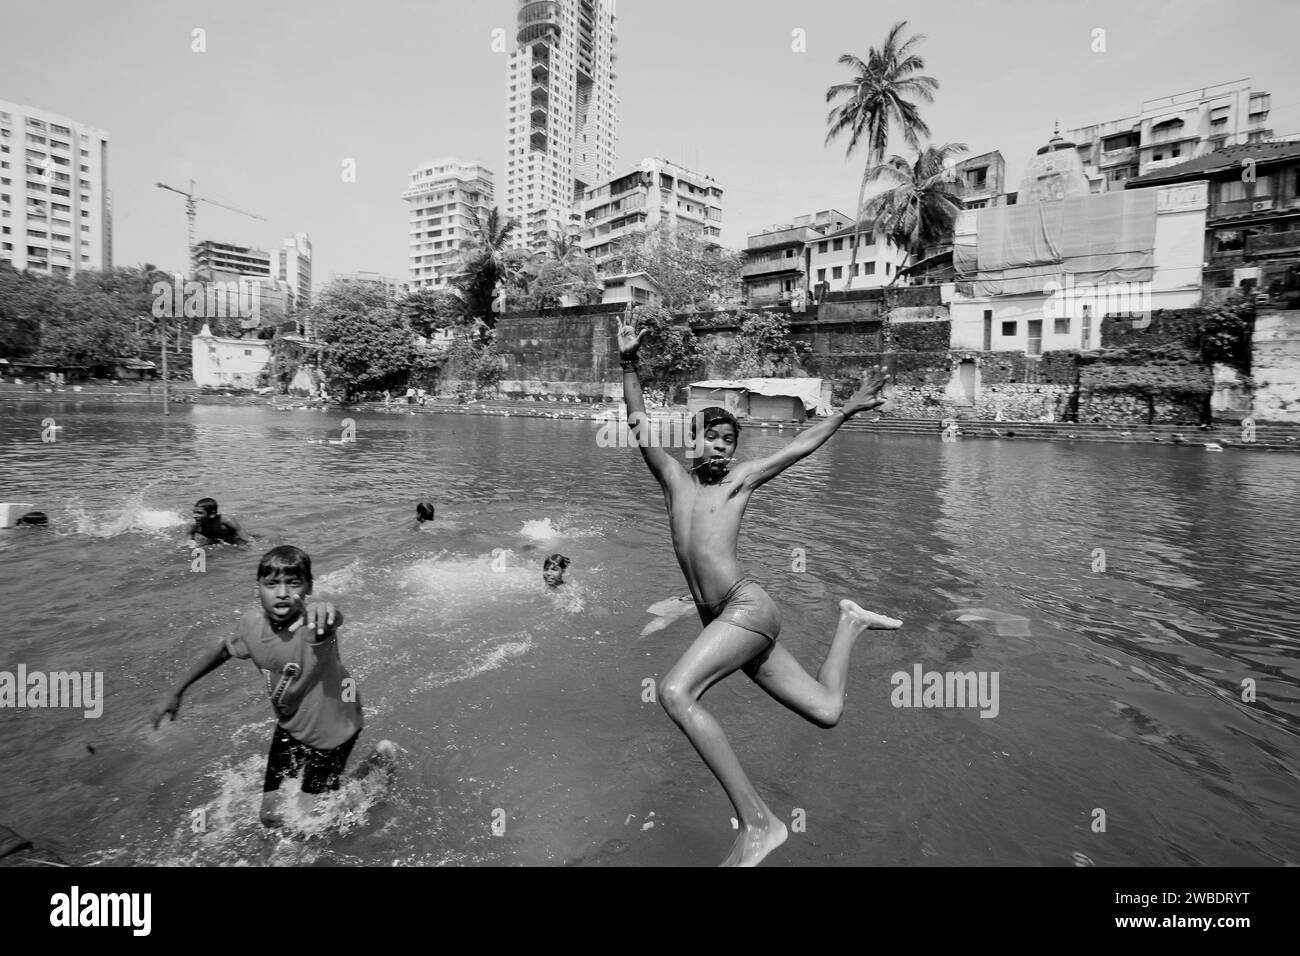 Image ©Lizenzierung an Parsons Media. 01/10/2008. London, Indien. Slum in Mumbai, Indien, September 2008 Bild von Andrew Parsons / Parsons Media Stockfoto